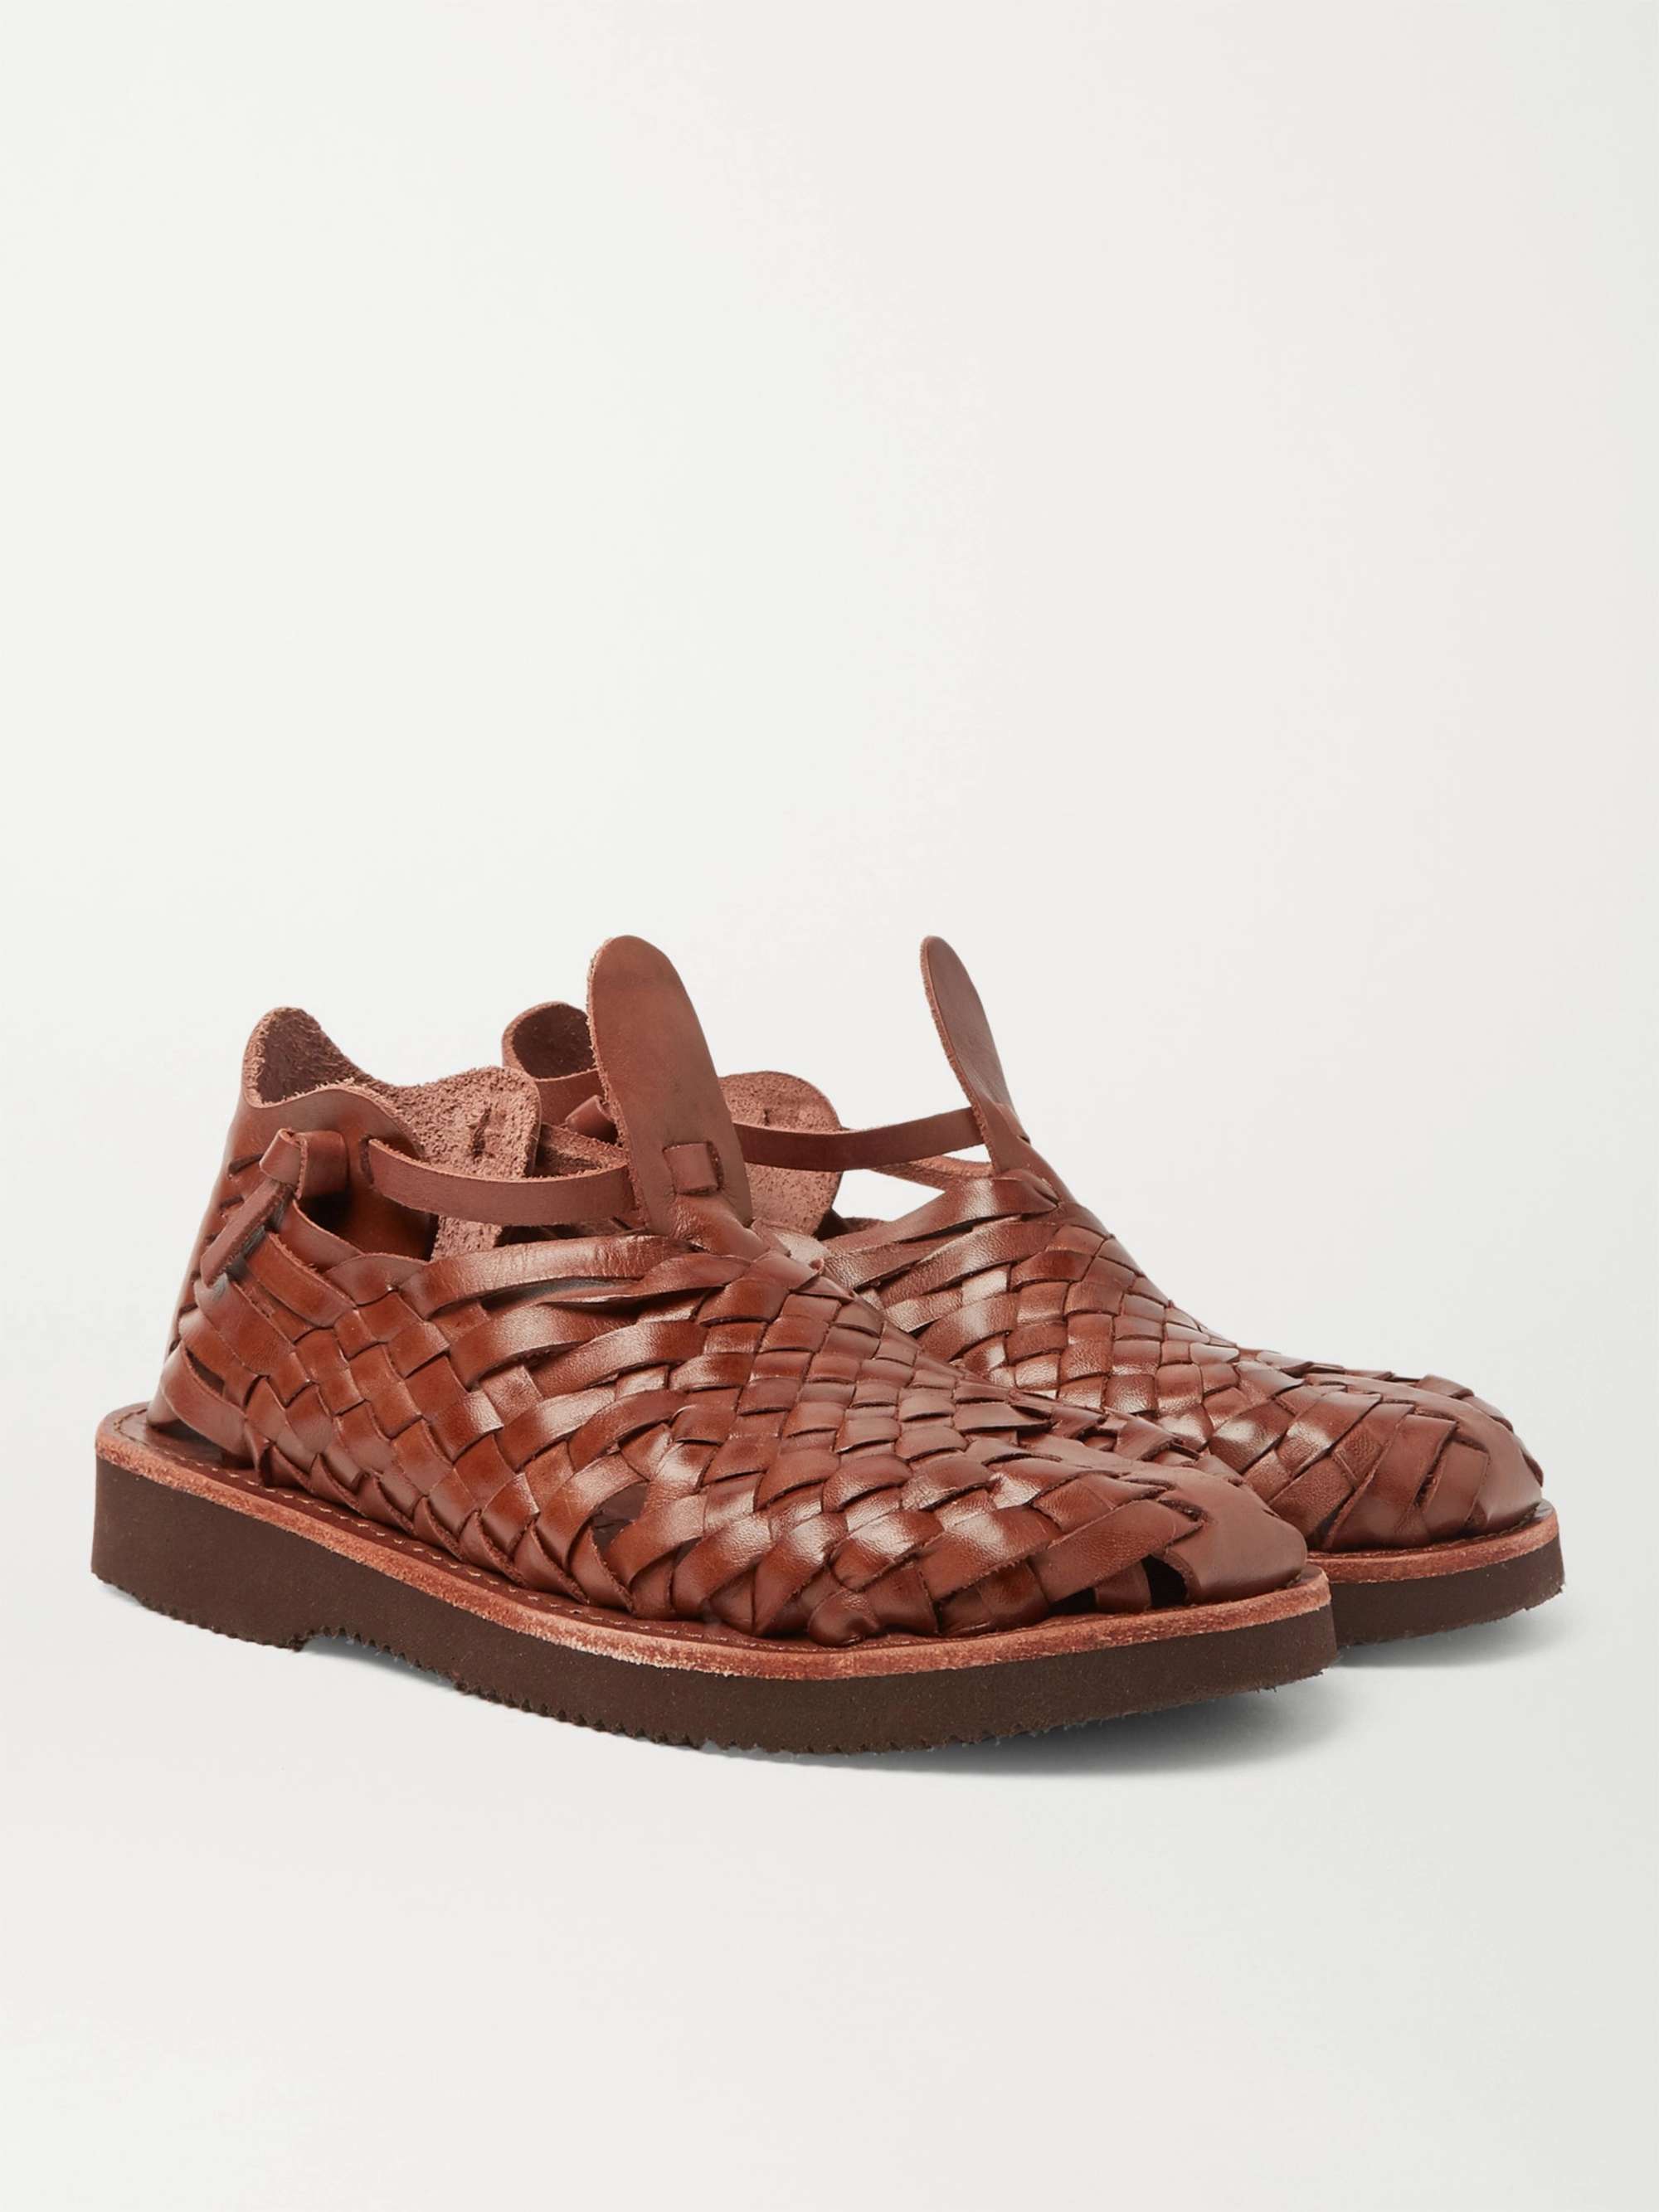 YUKETEN Crus Woven Leather Sandals